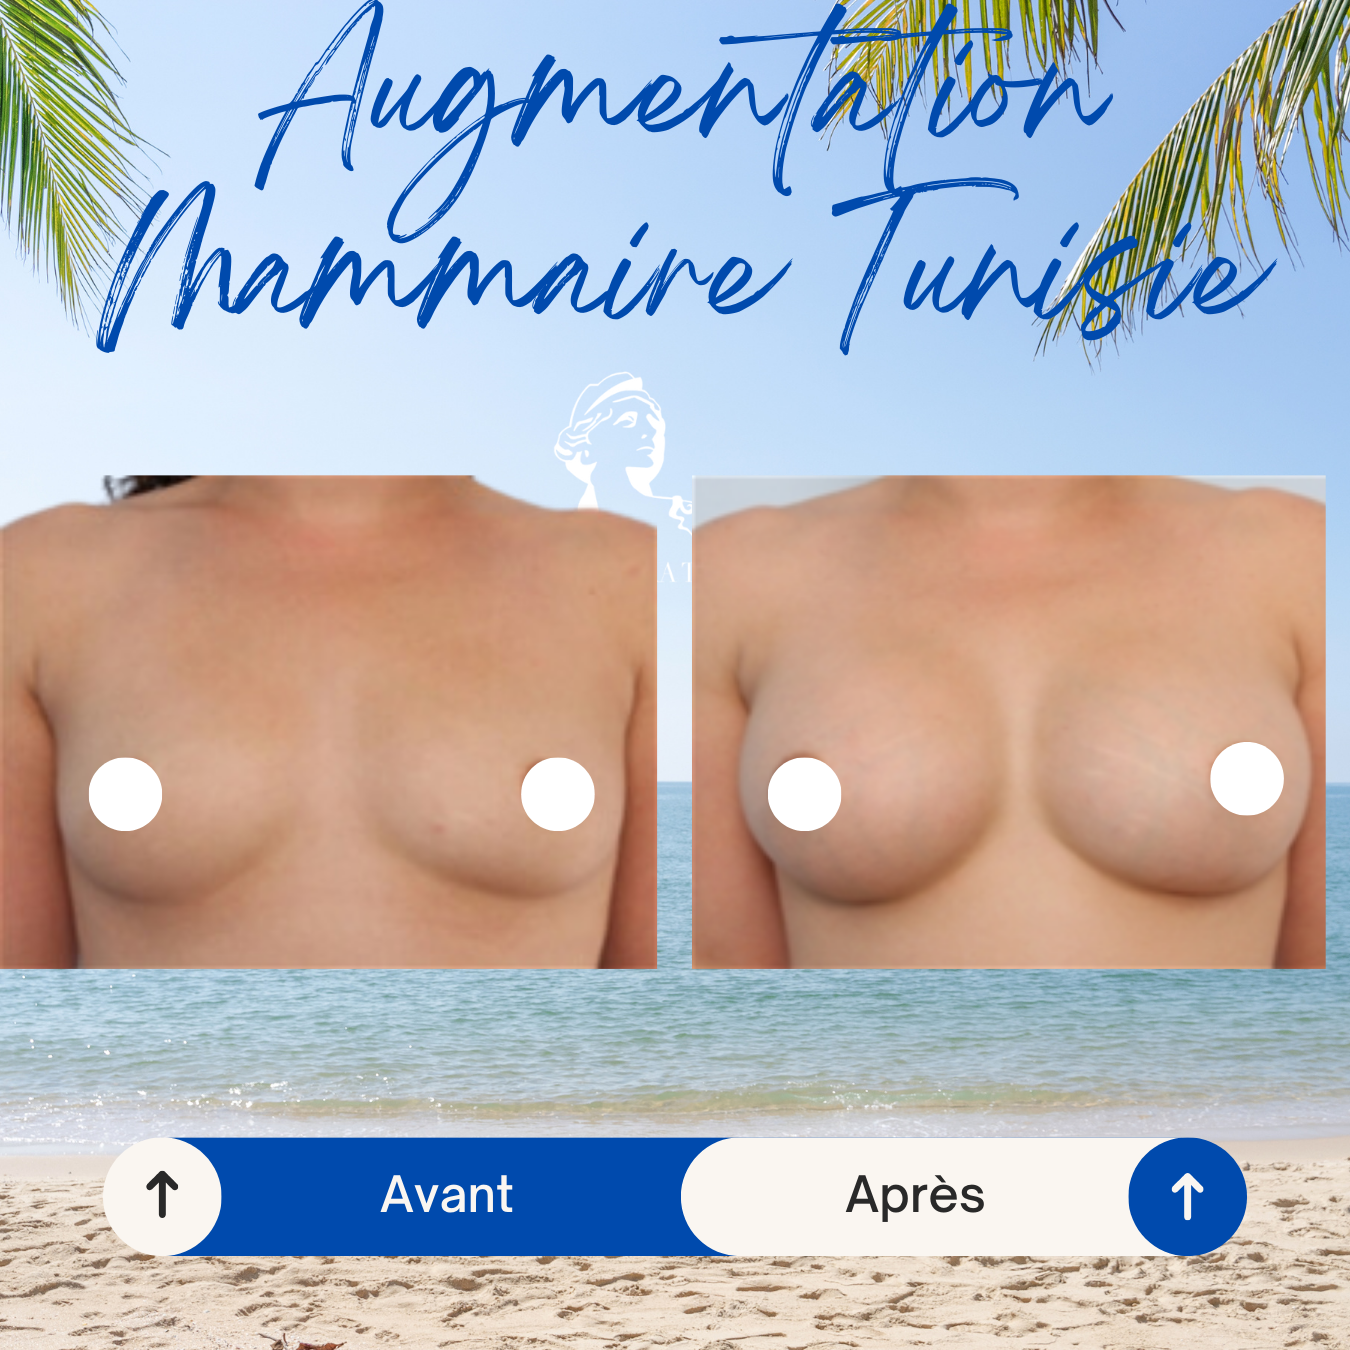 Implant mammaire prix france, Augmentation mammaire ratée tunisie